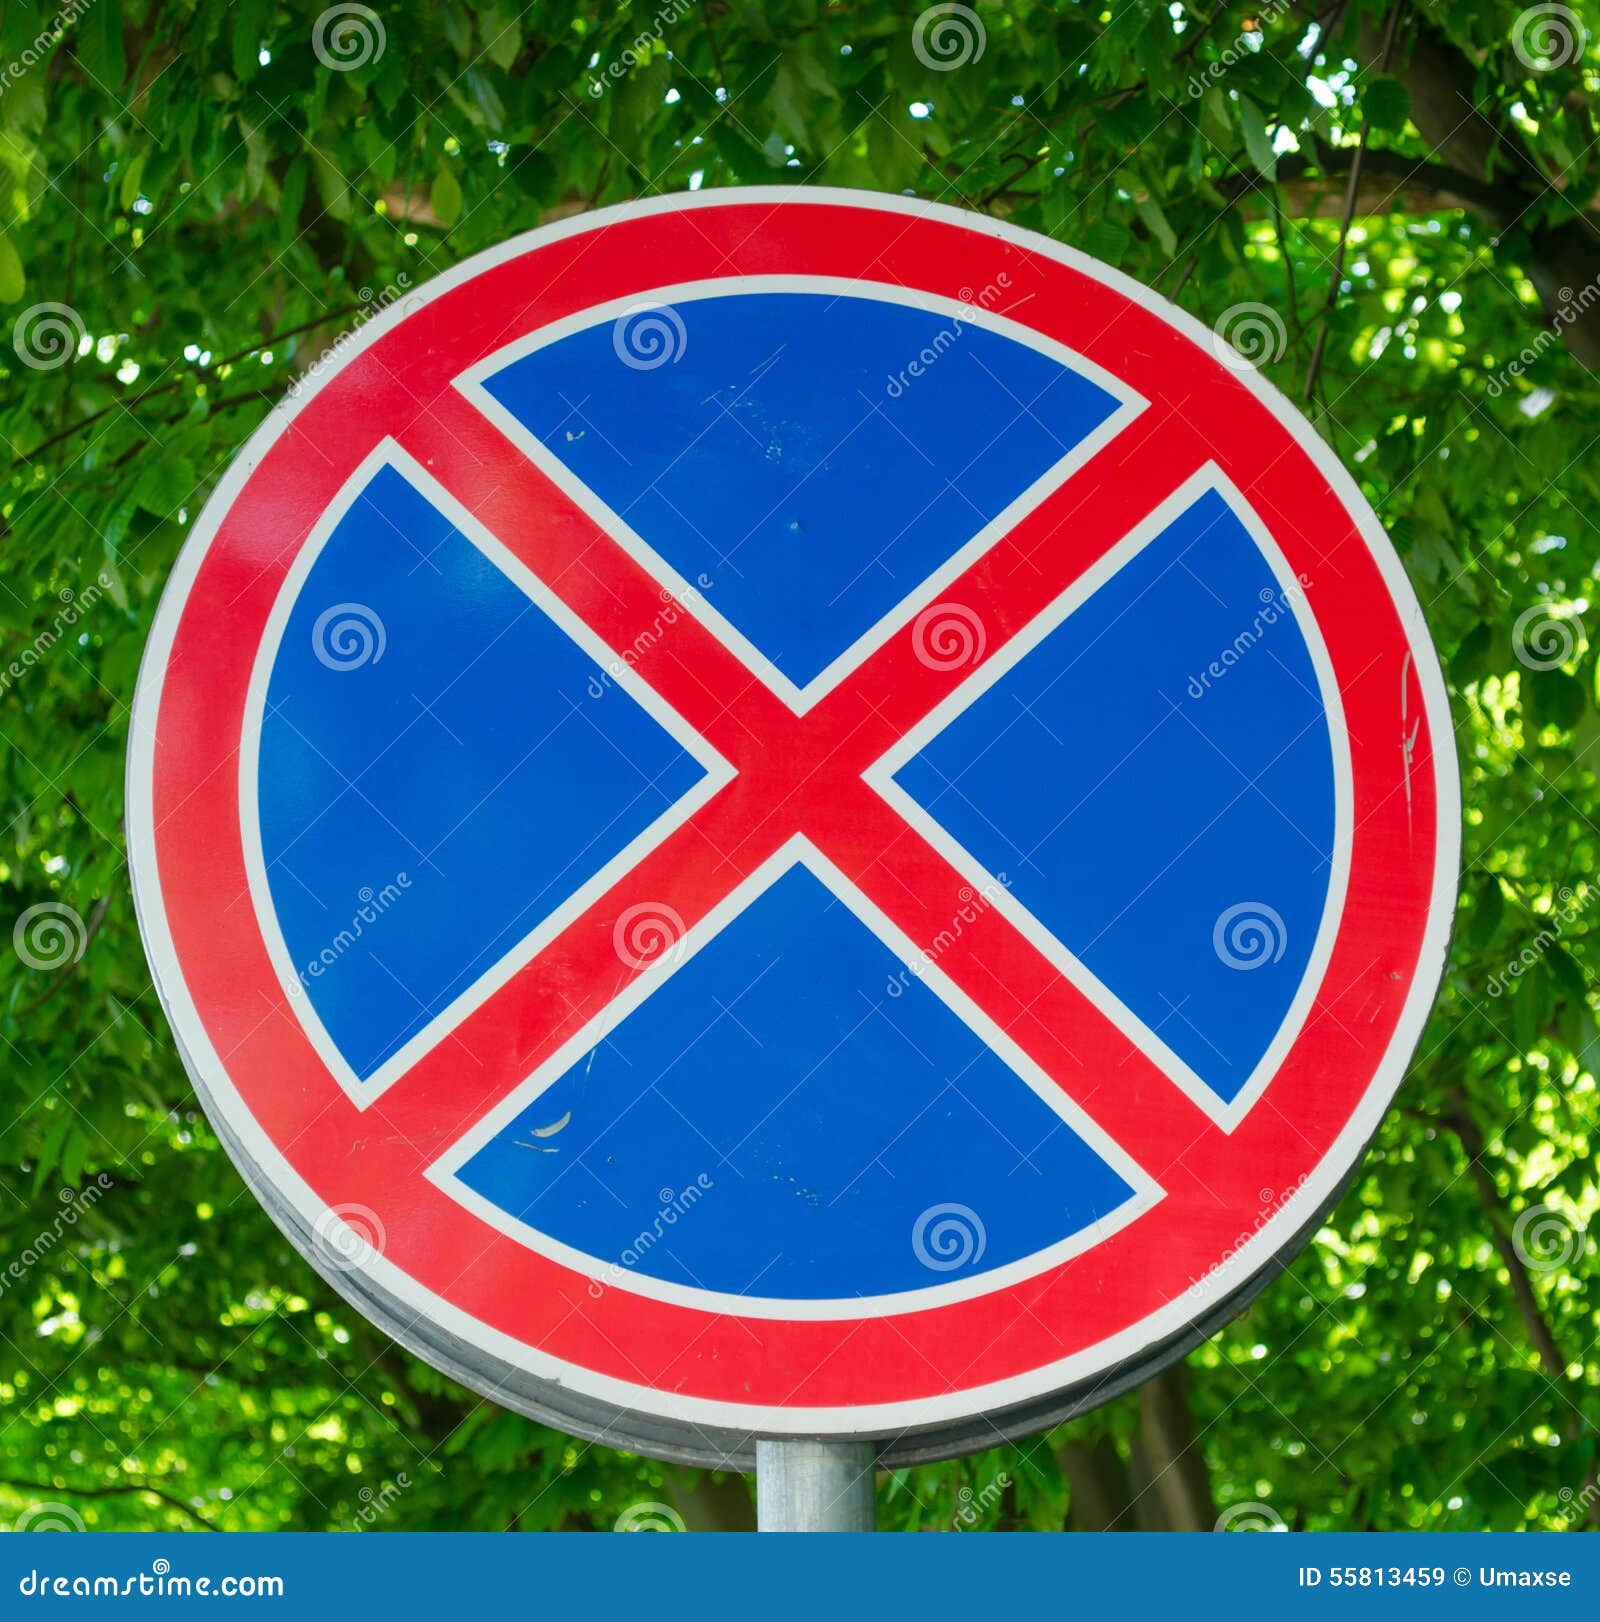 Перечеркнутый синий круг знак. Дорожный знак круглый с красным крестом. Круглые круглые дорожные знаки. Круглые дорожные знаки с крестом. Круглый синий знак с красным крестом.